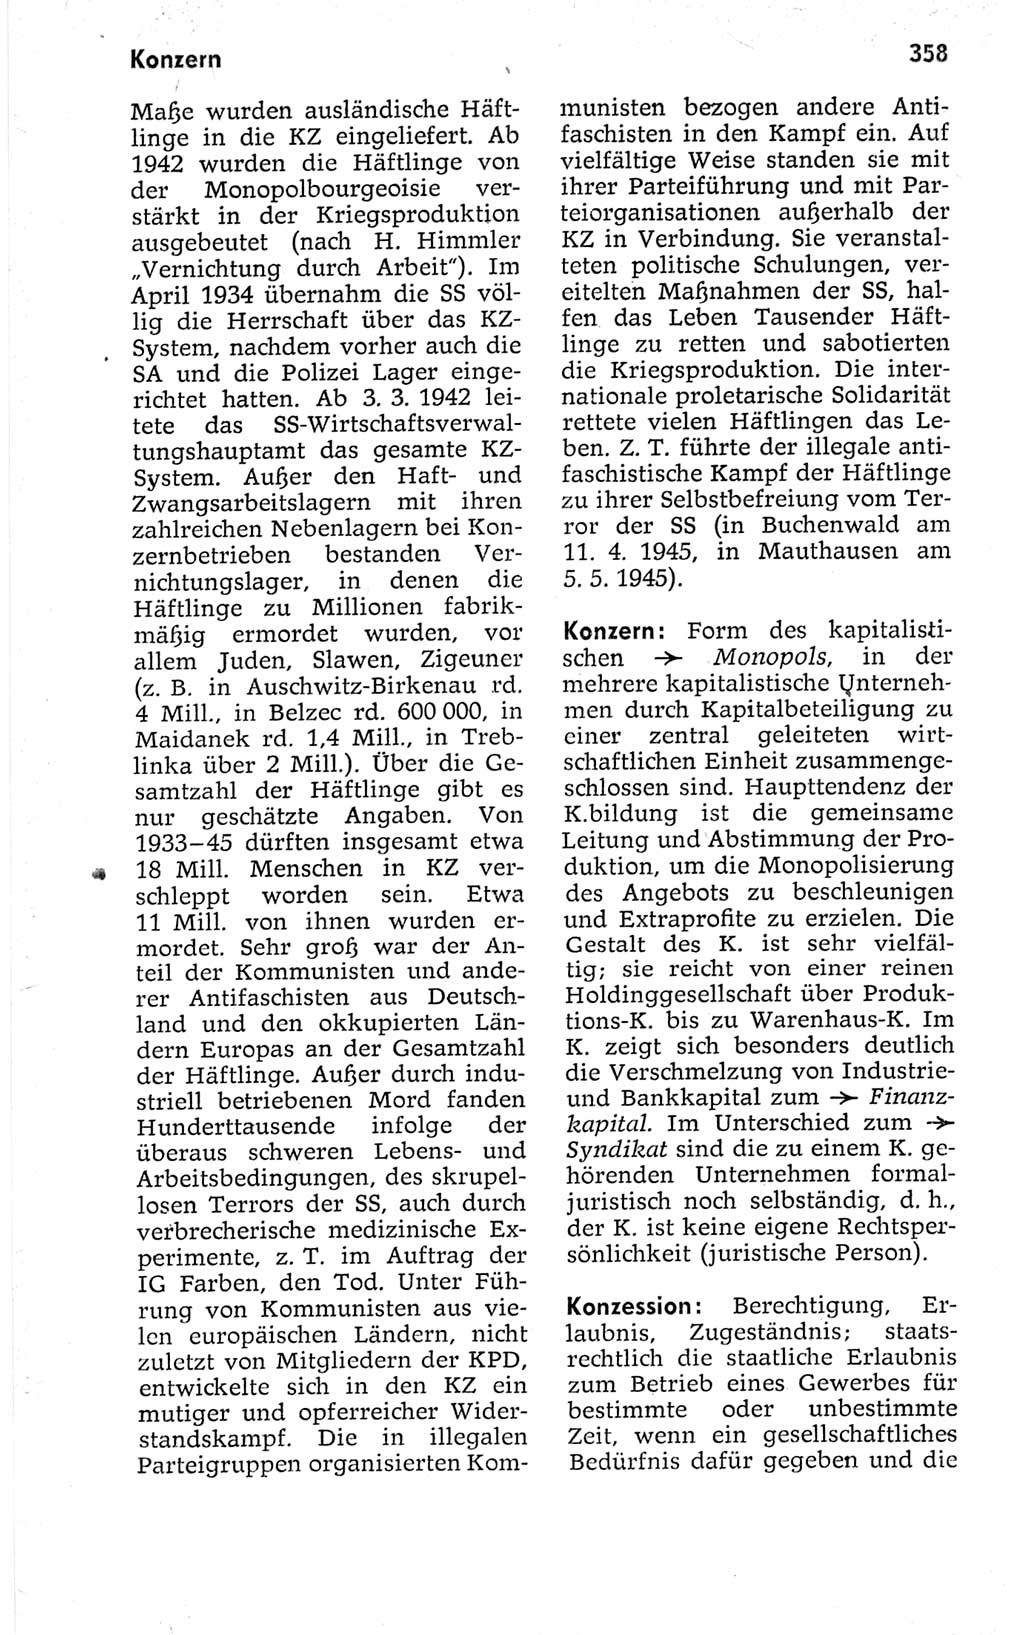 Kleines politisches Wörterbuch [Deutsche Demokratische Republik (DDR)] 1967, Seite 358 (Kl. pol. Wb. DDR 1967, S. 358)